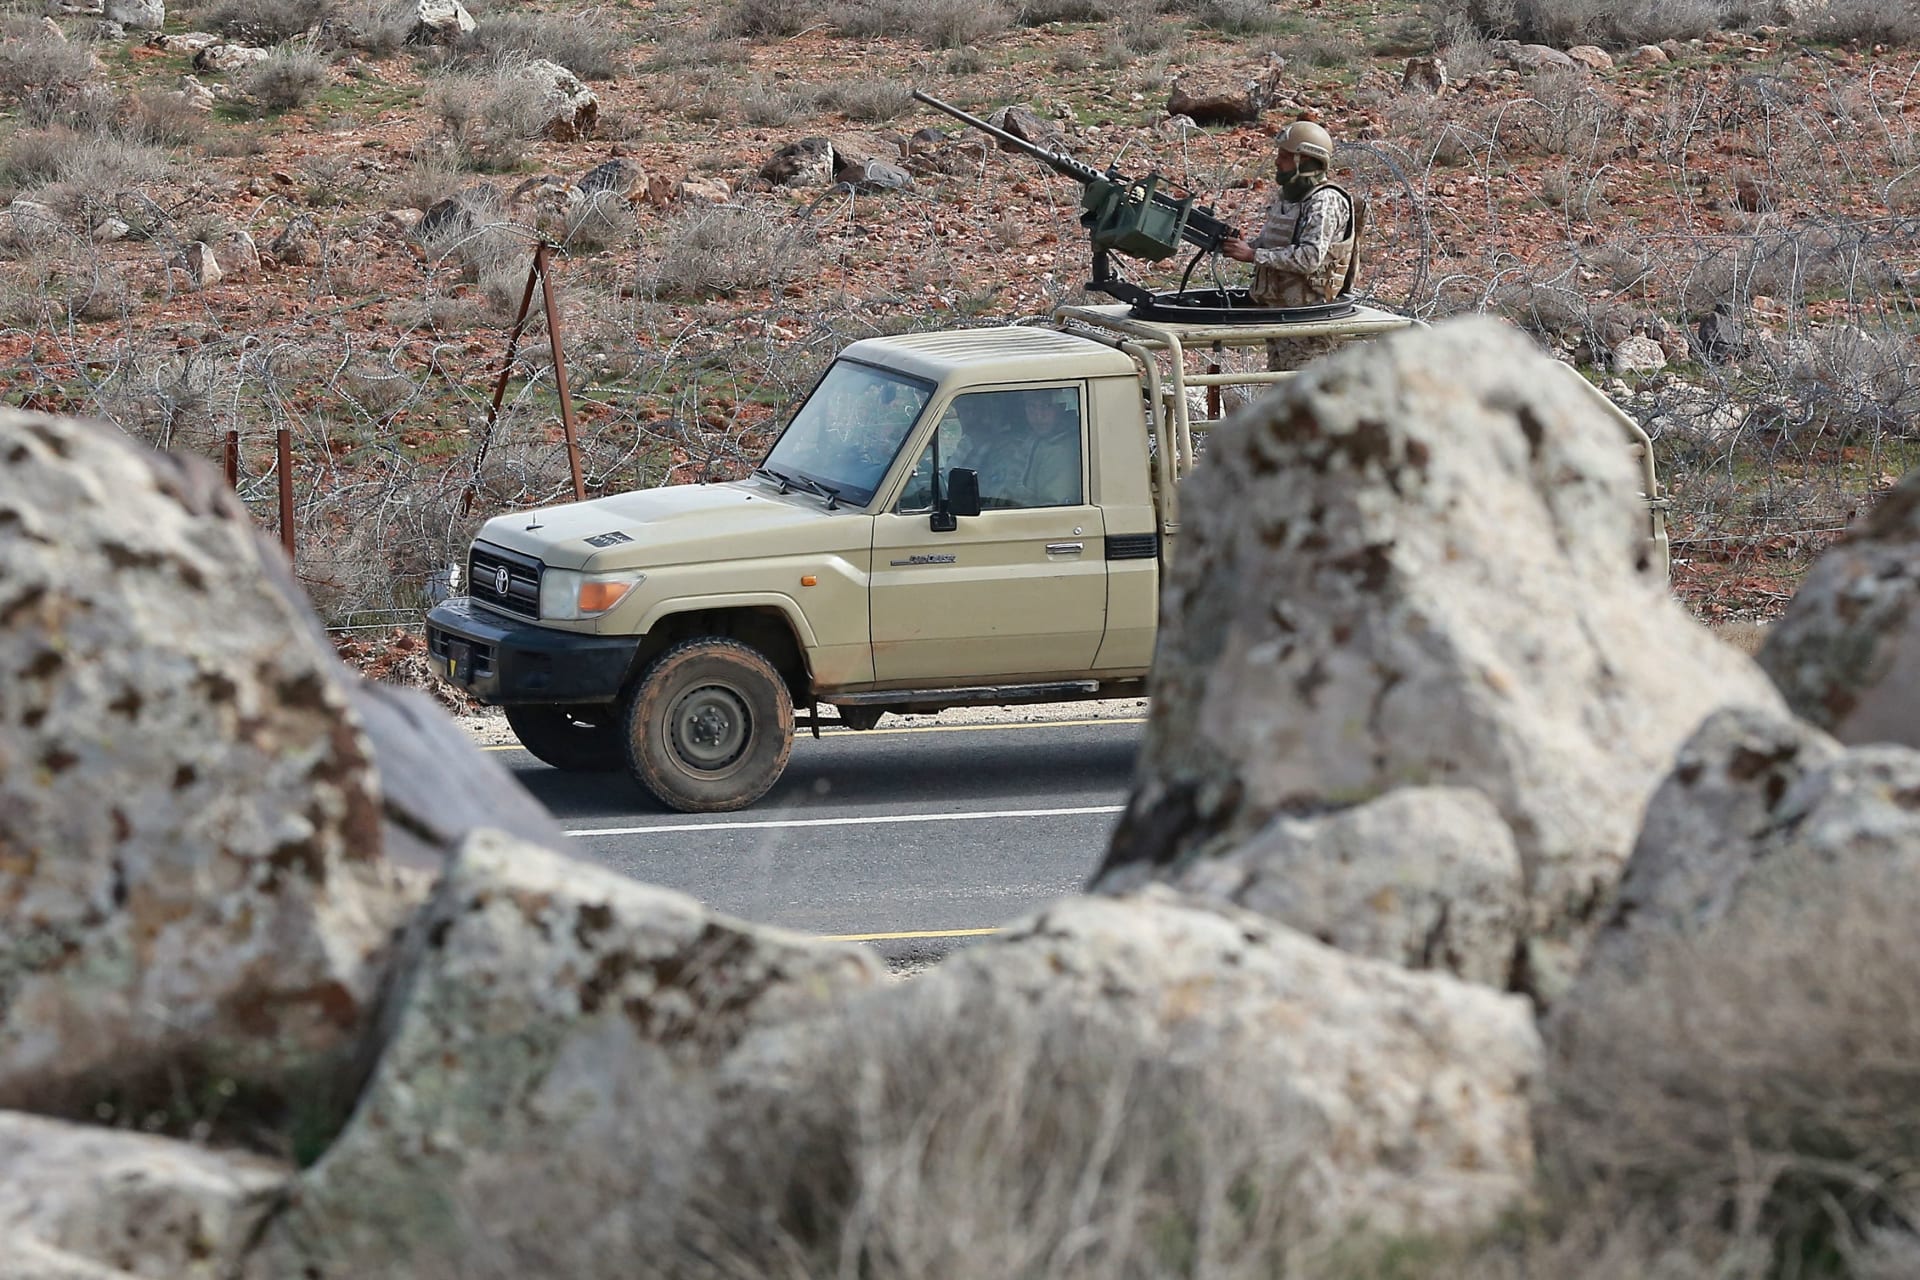 الجيش الأردني: مقتل 2 من المهربين في إحباط تهريب مخدرات داخل المملكة قادمة من سوريا 